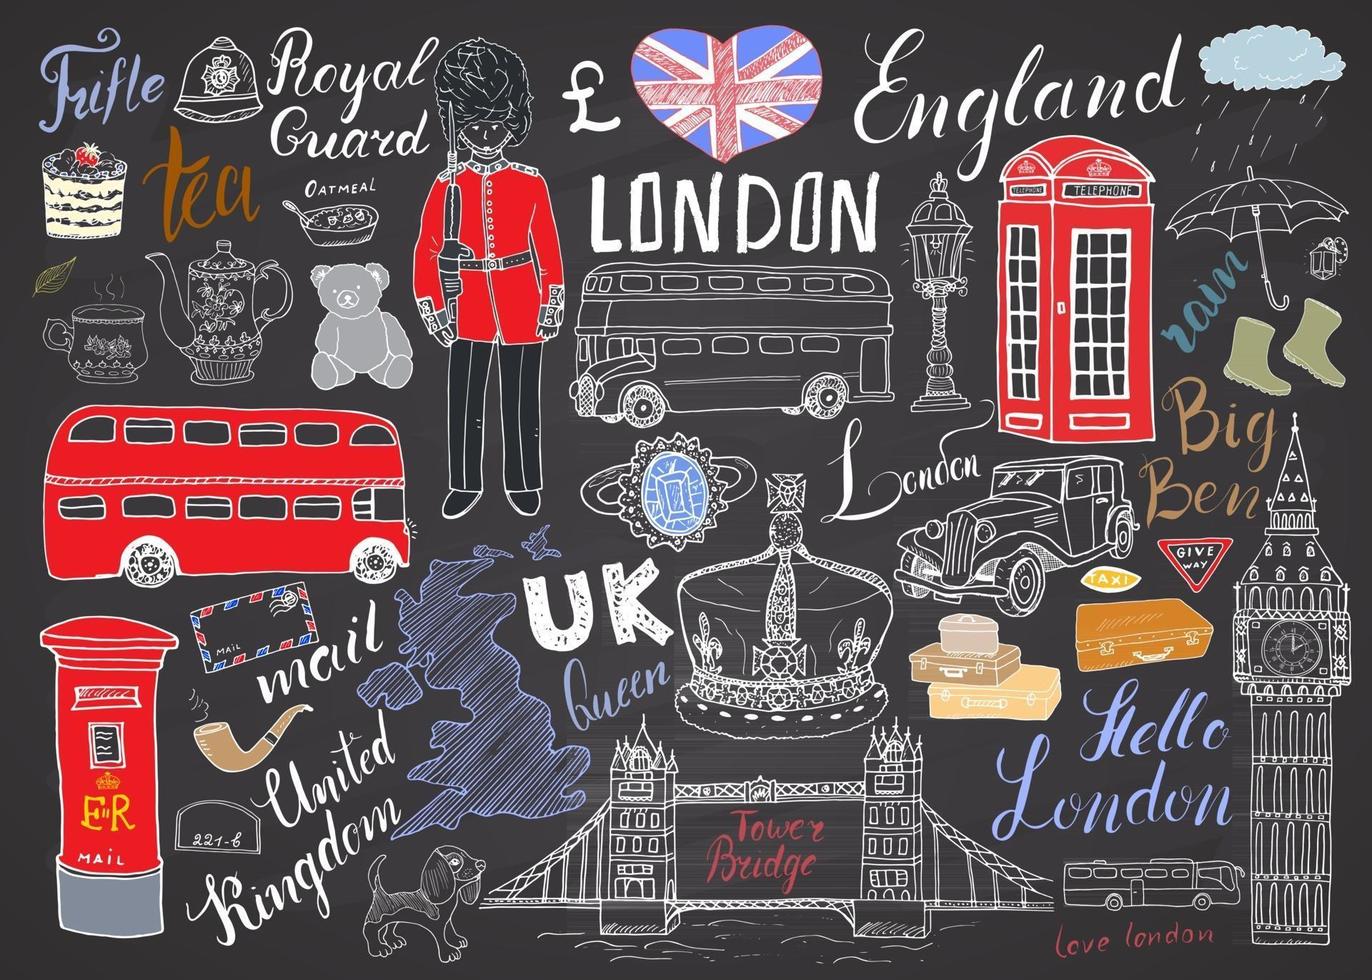 coleção de elementos doodles da cidade de Londres. conjunto desenhado à mão com ponte da torre, coroa, big ben, guarda real, ônibus e táxi vermelhos, mapa e bandeira do Reino Unido, bule de chá, letras, ilustração vetorial isolada vetor